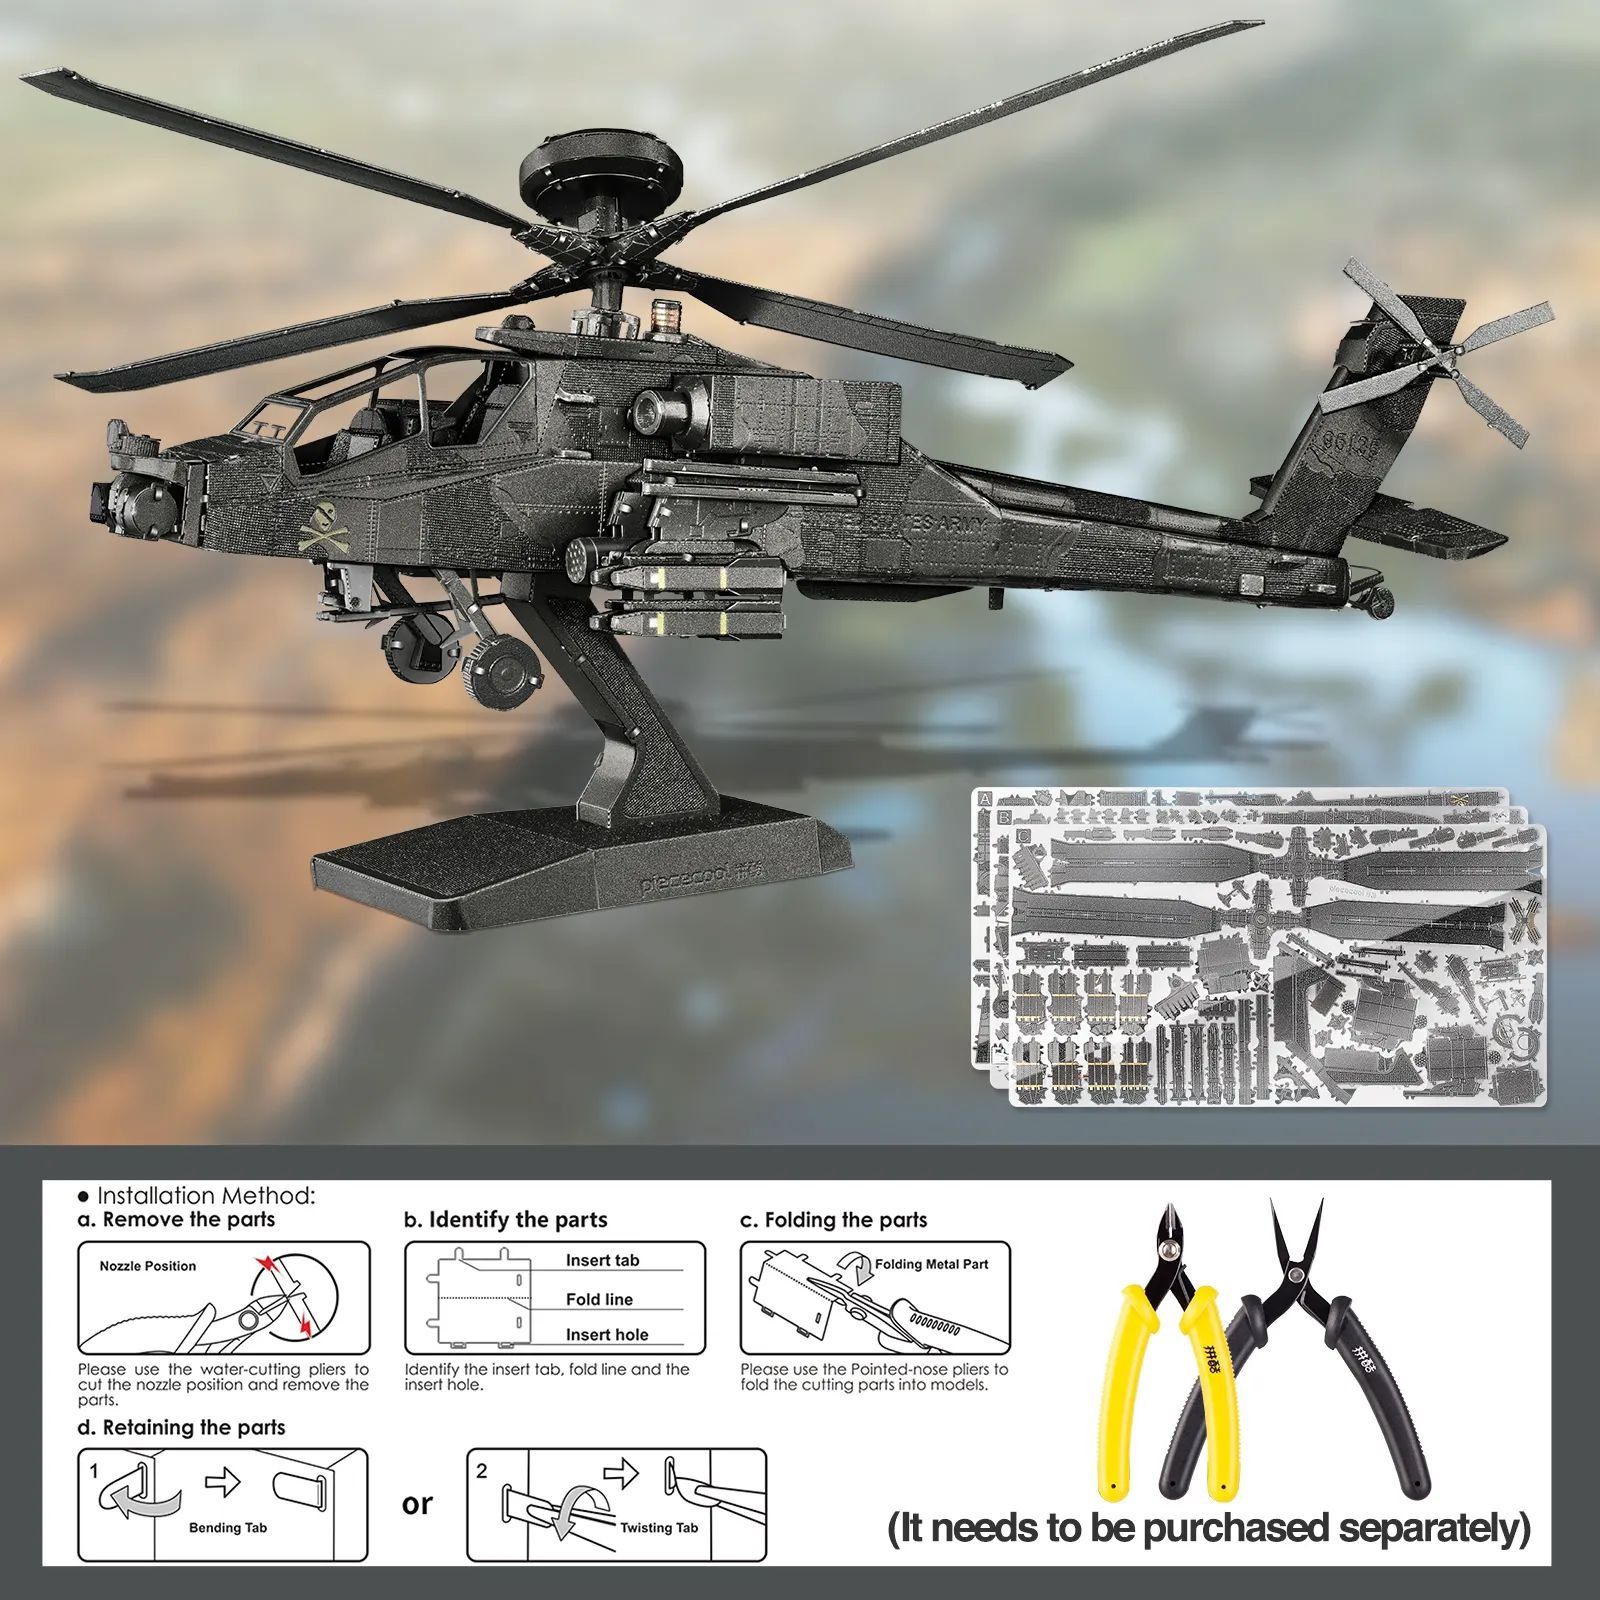  Mô Hình Kim Loại Lắp Ráp 3D Piececool Trực Thăng AH-64 Apache (145 mảnh) HP322-KS - MP1193 